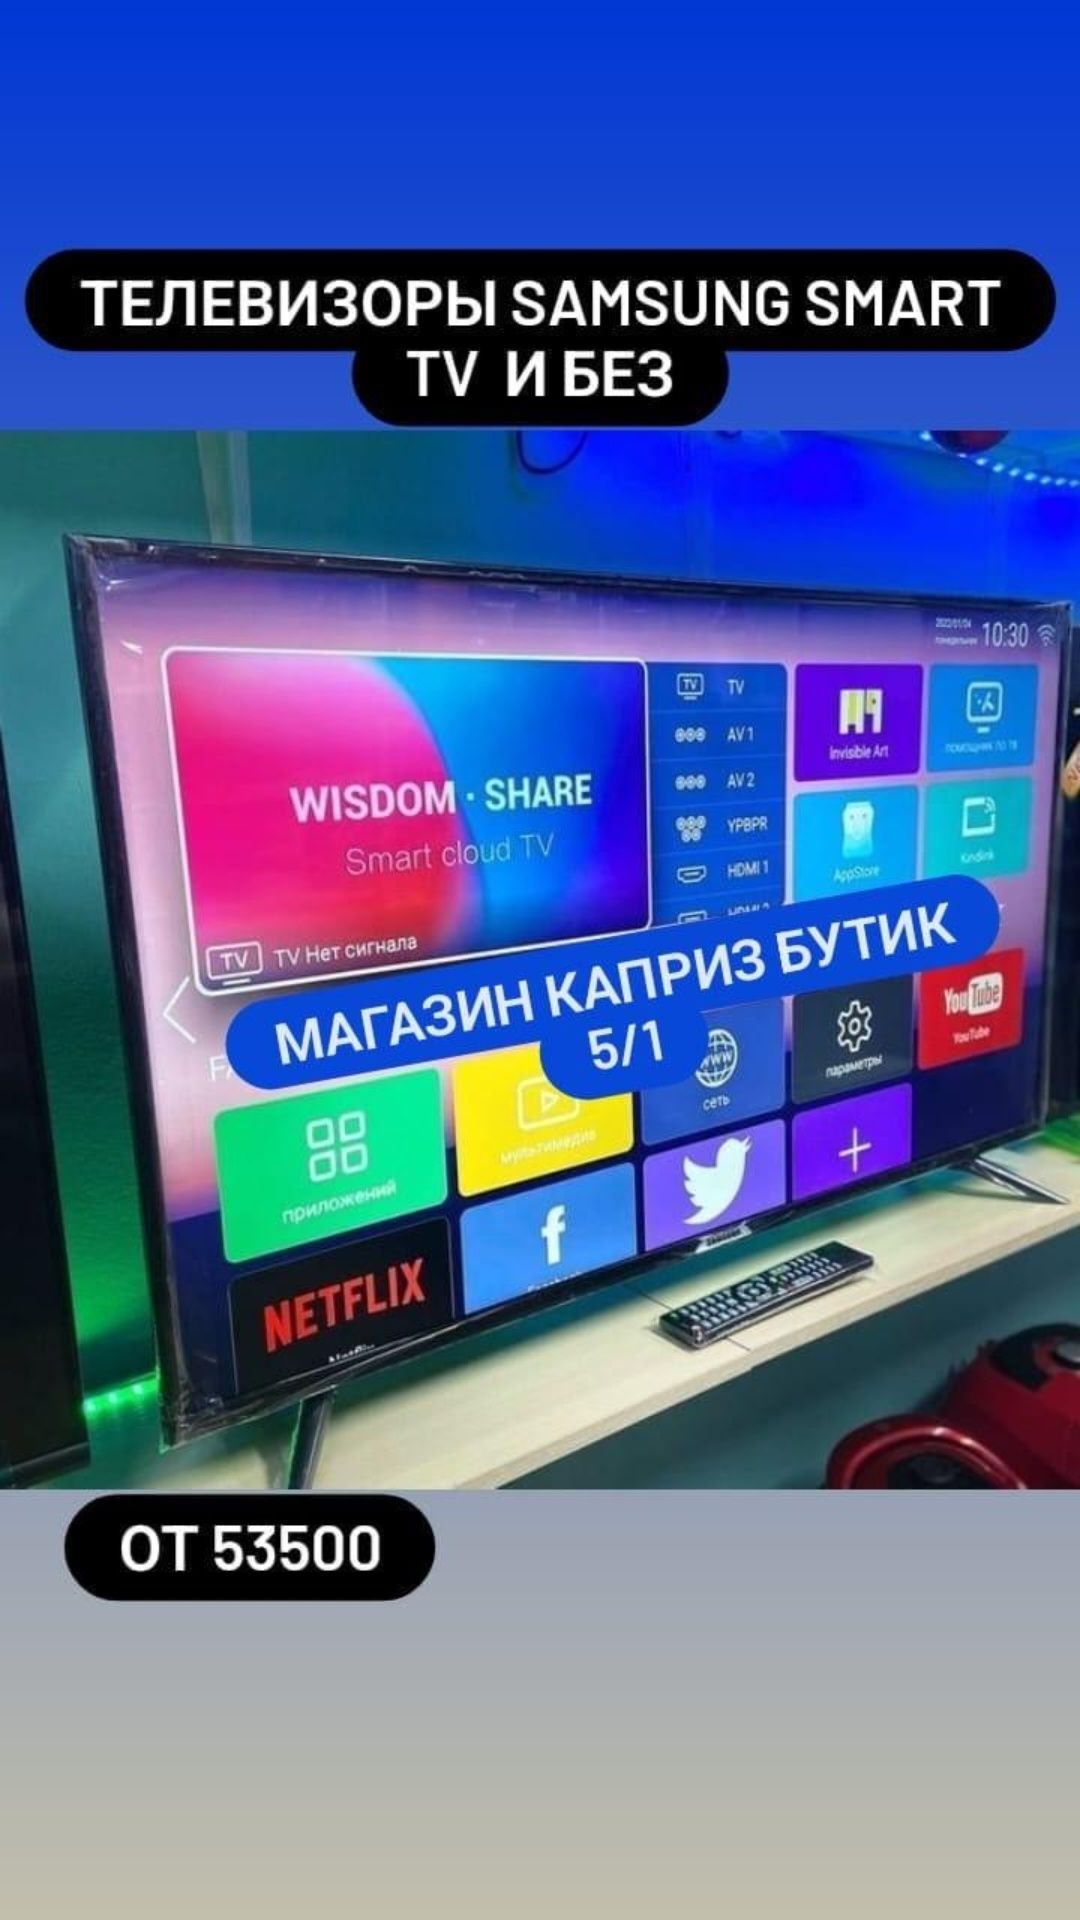 Телевизоры Samsung, Xiaomi новые на андройде 11.0